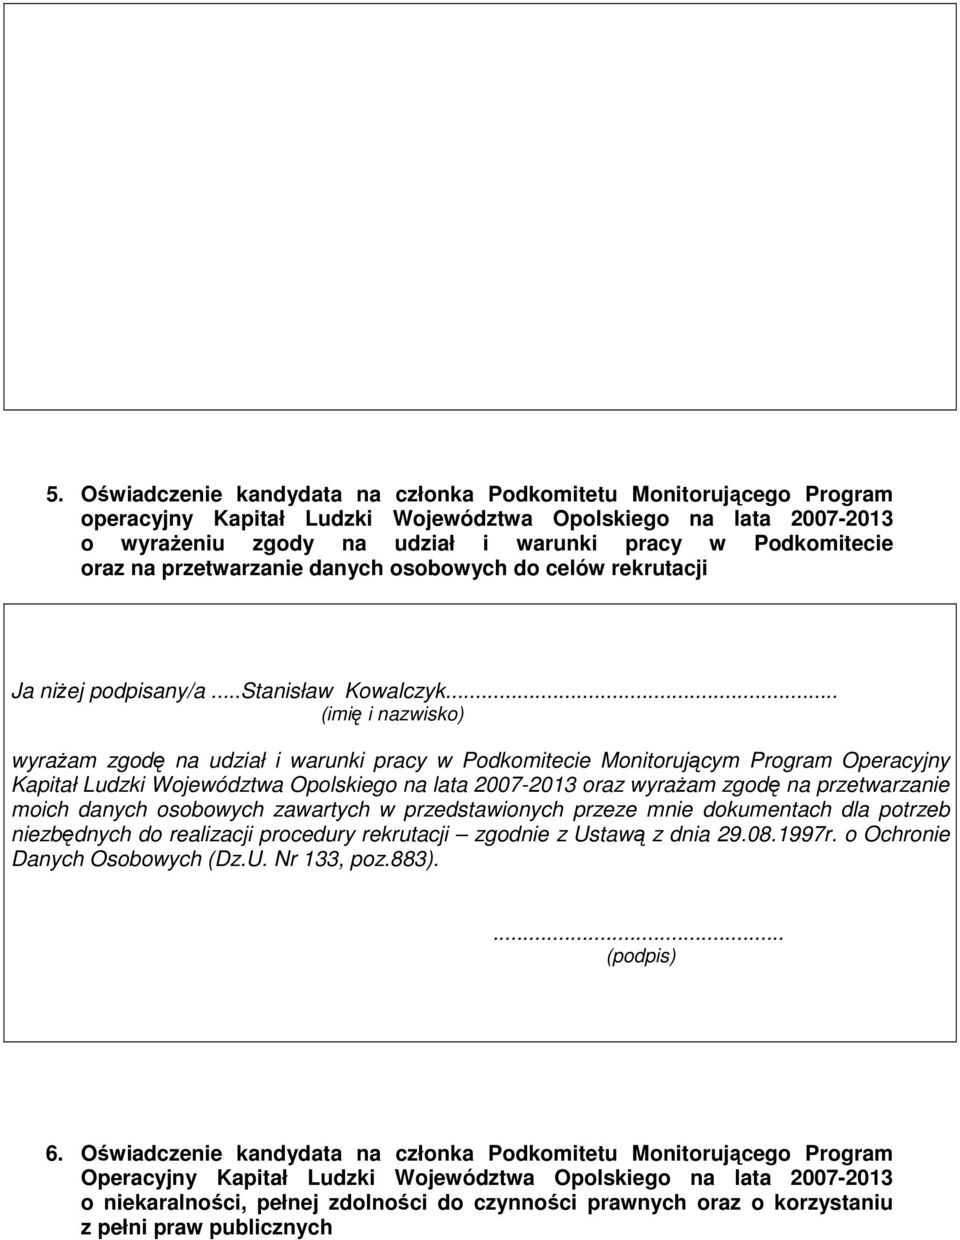 .. (imię i nazwisko) wyraŝam zgodę na udział i warunki pracy w Podkomitecie Monitorującym Program Operacyjny Kapitał Ludzki Województwa Opolskiego na lata 2007-2013 oraz wyraŝam zgodę na